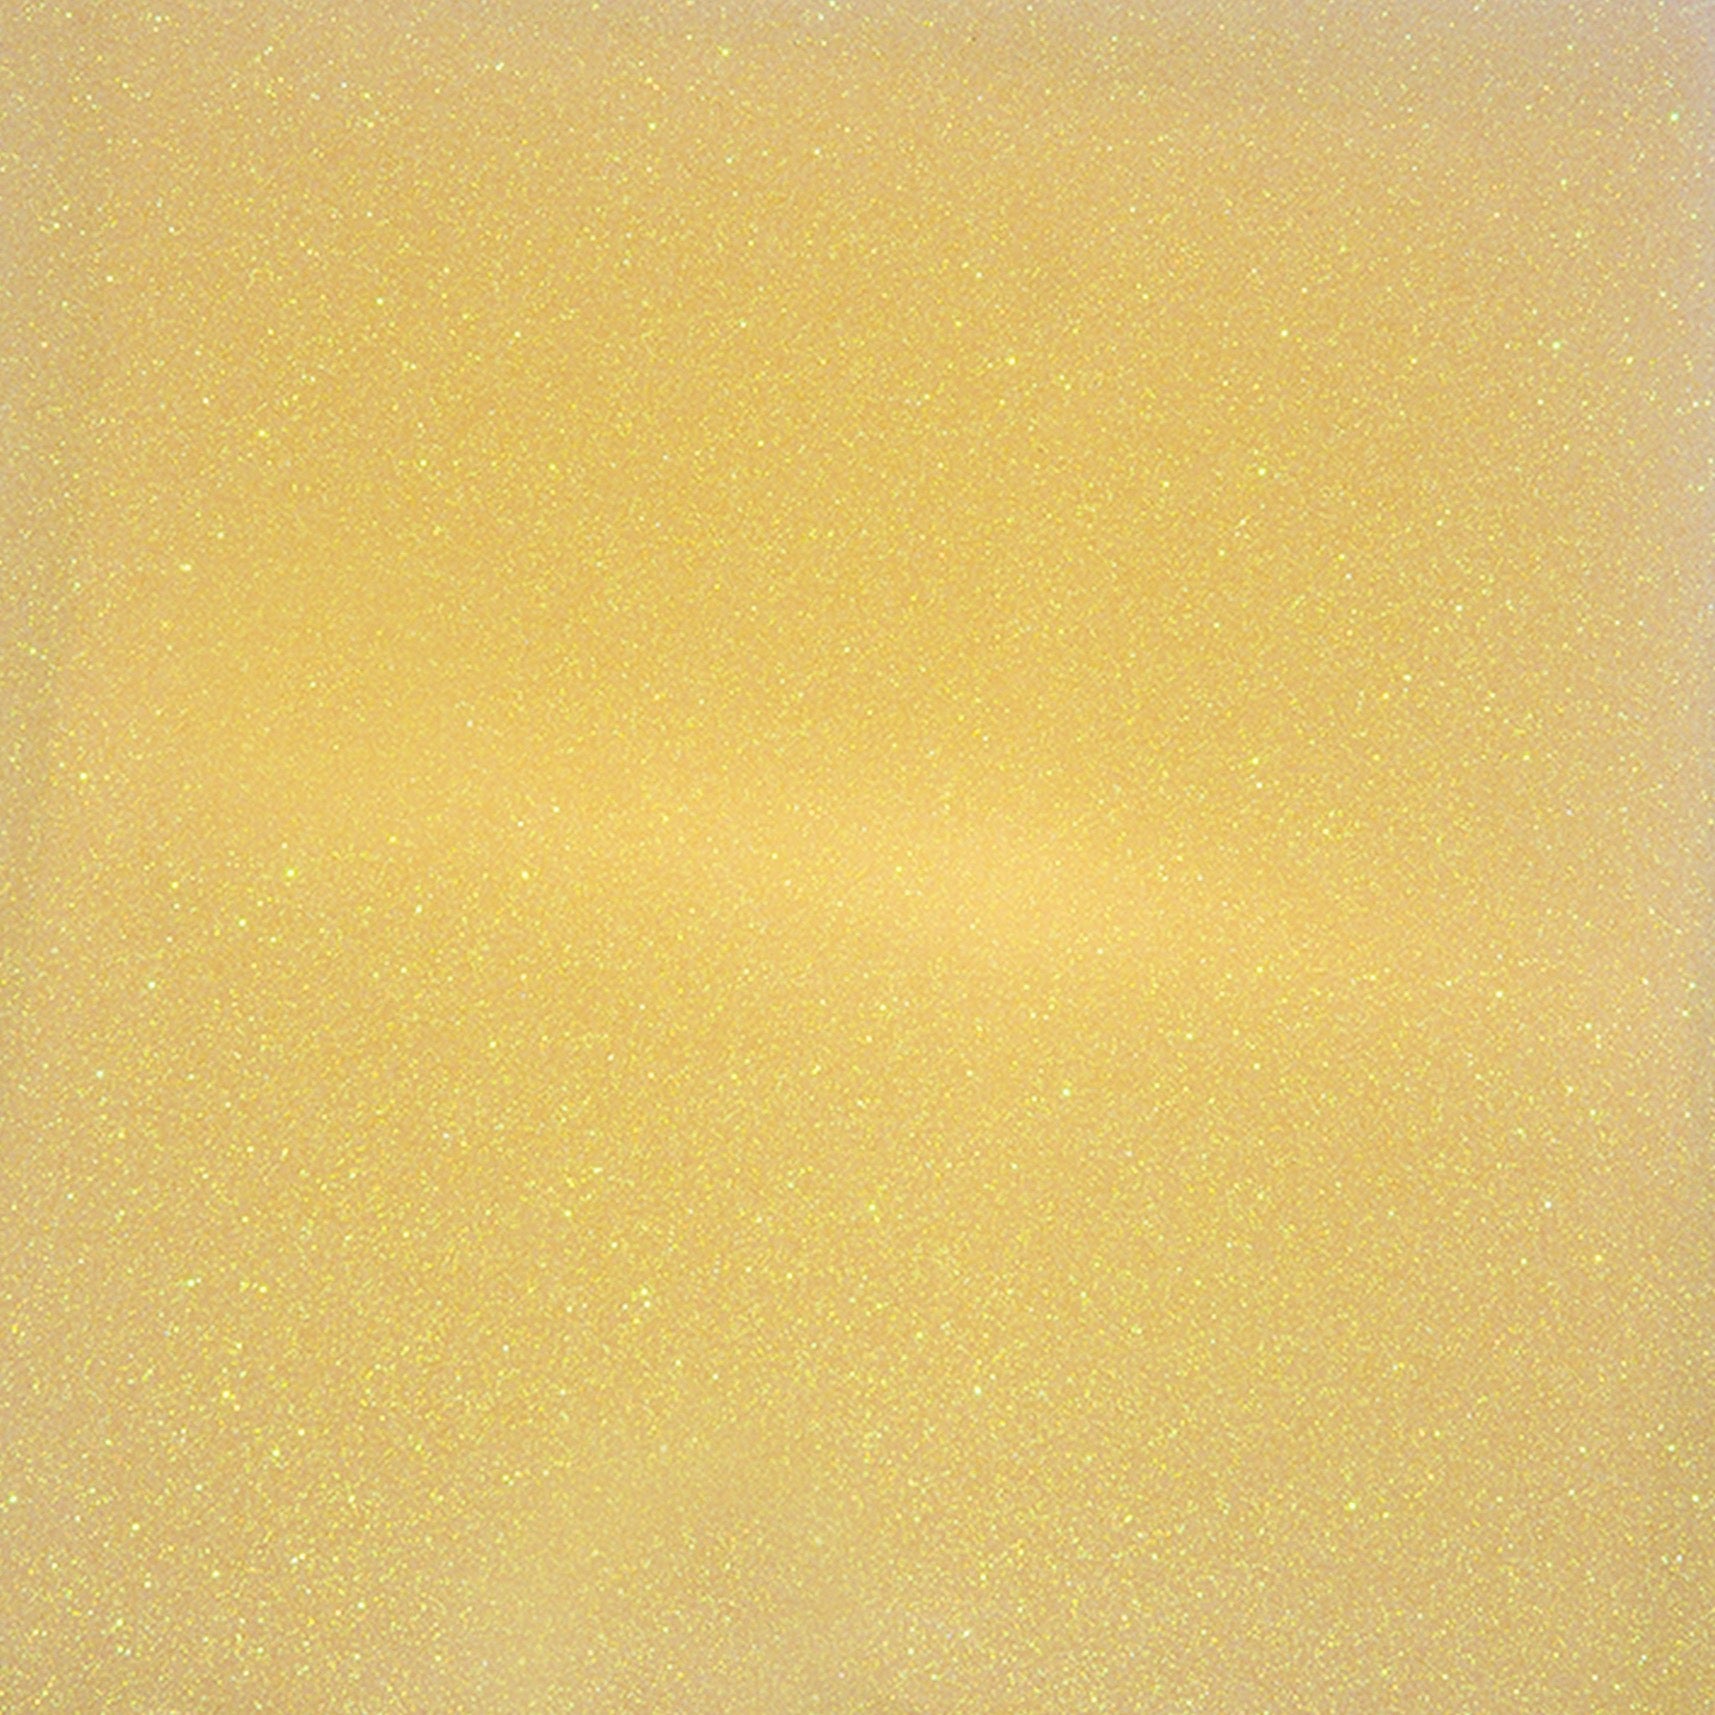 Xtreme Polishing Systems yellow epoxy glitter.